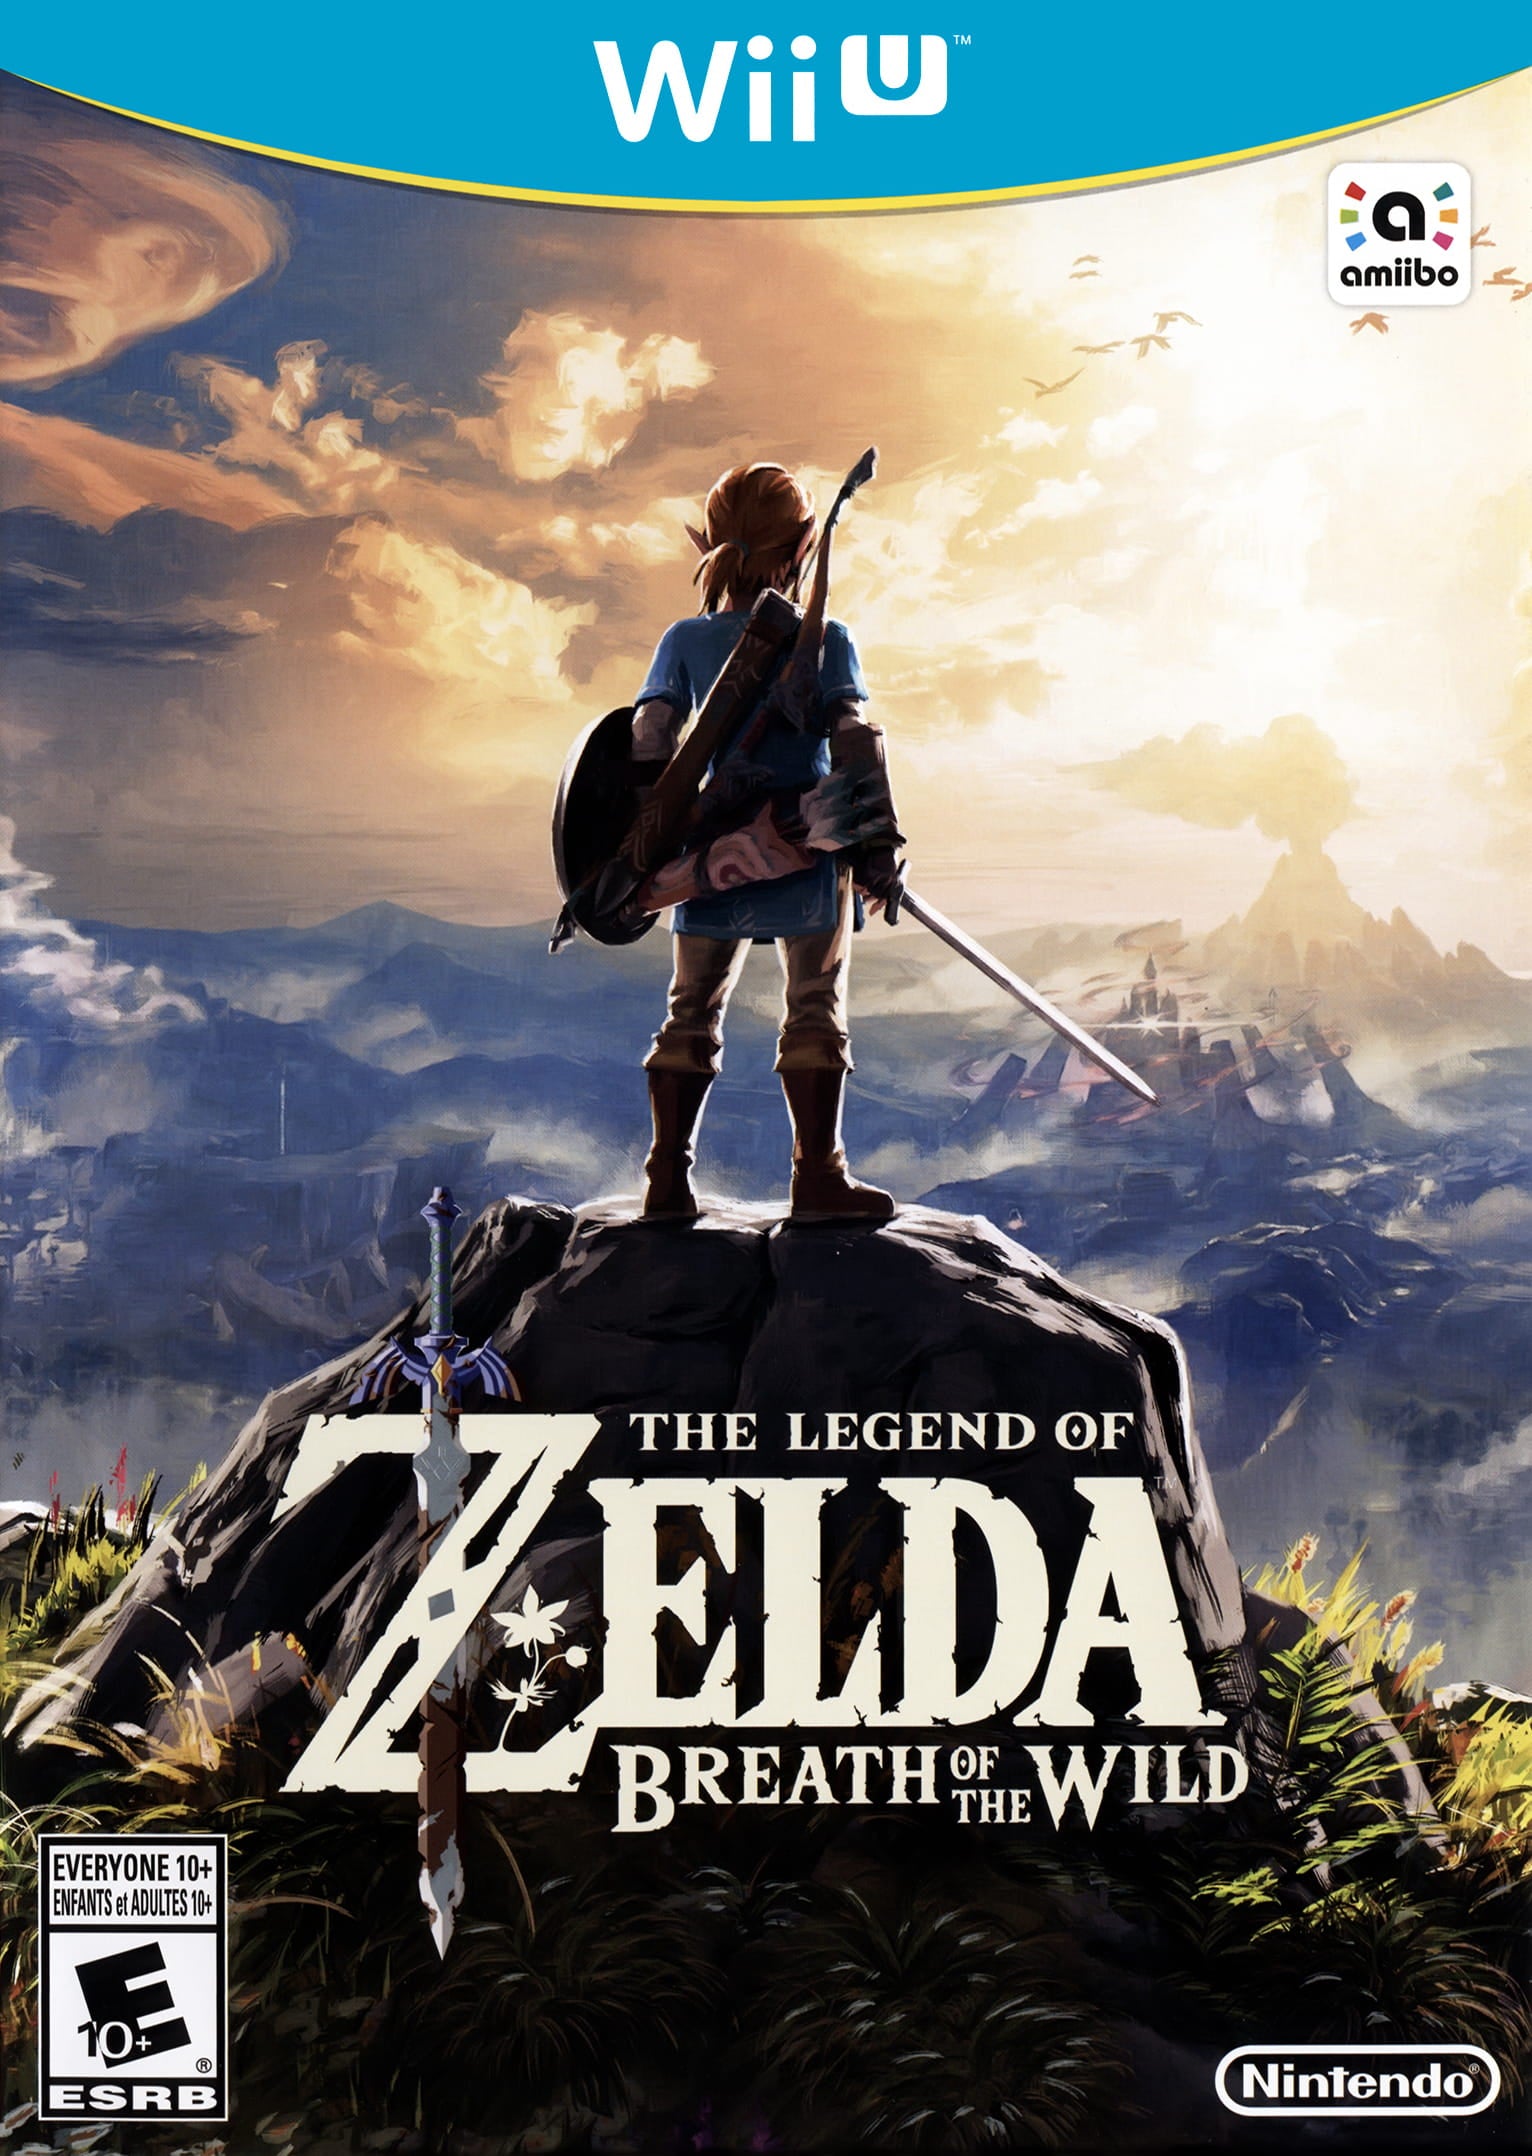 The Legend of Zelda: Breath of the Wild - Nintendo Wii U Game